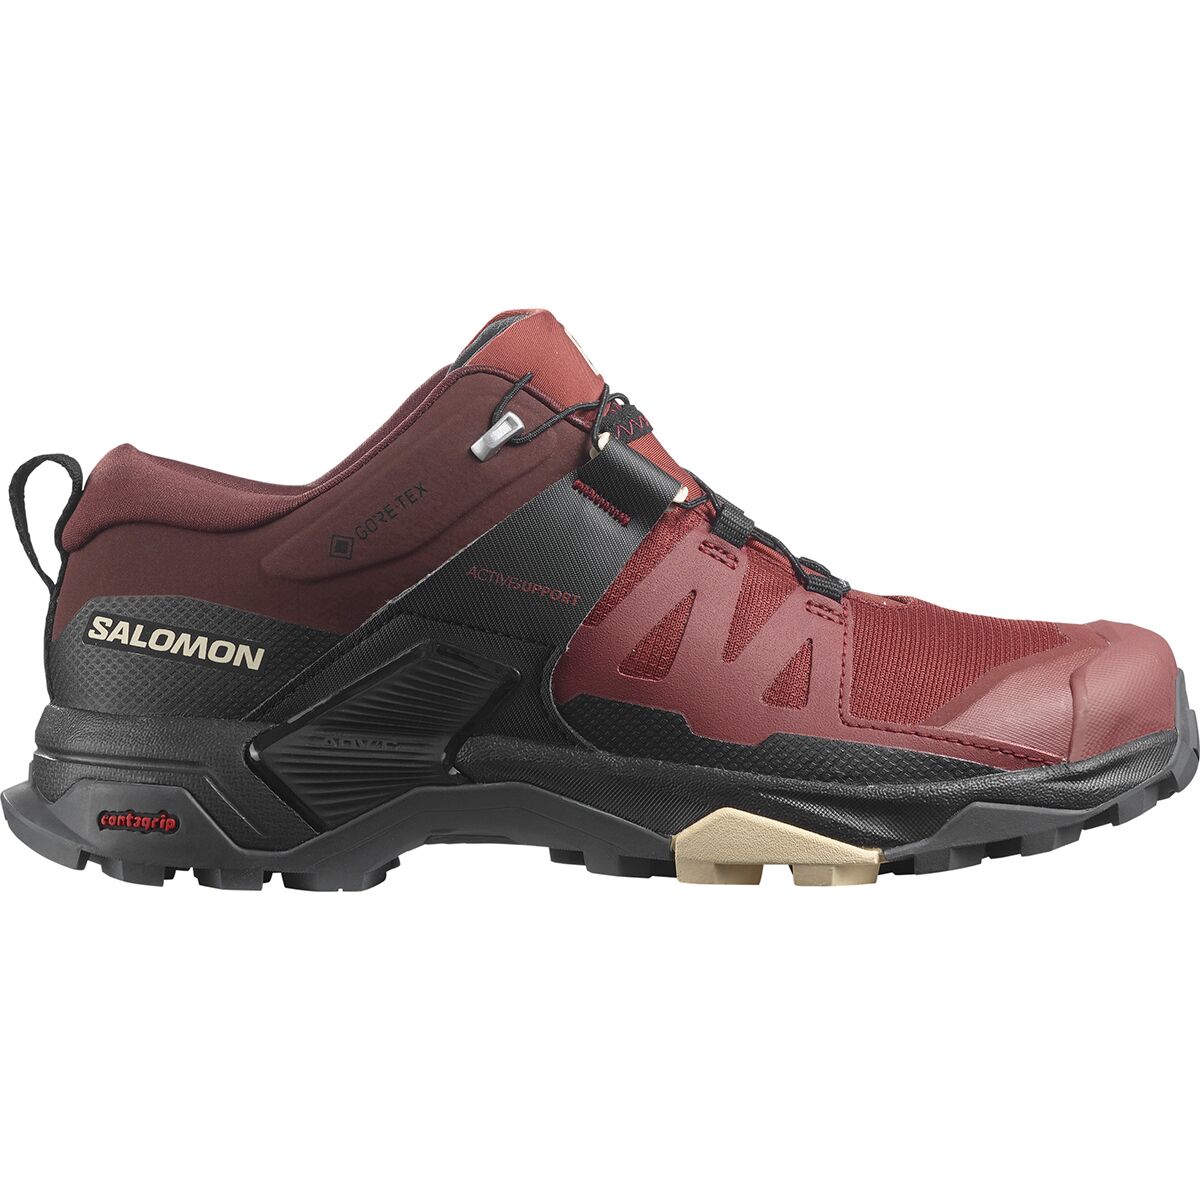 Salomon X Ultra 4 GTX Hiking Shoe - Women's